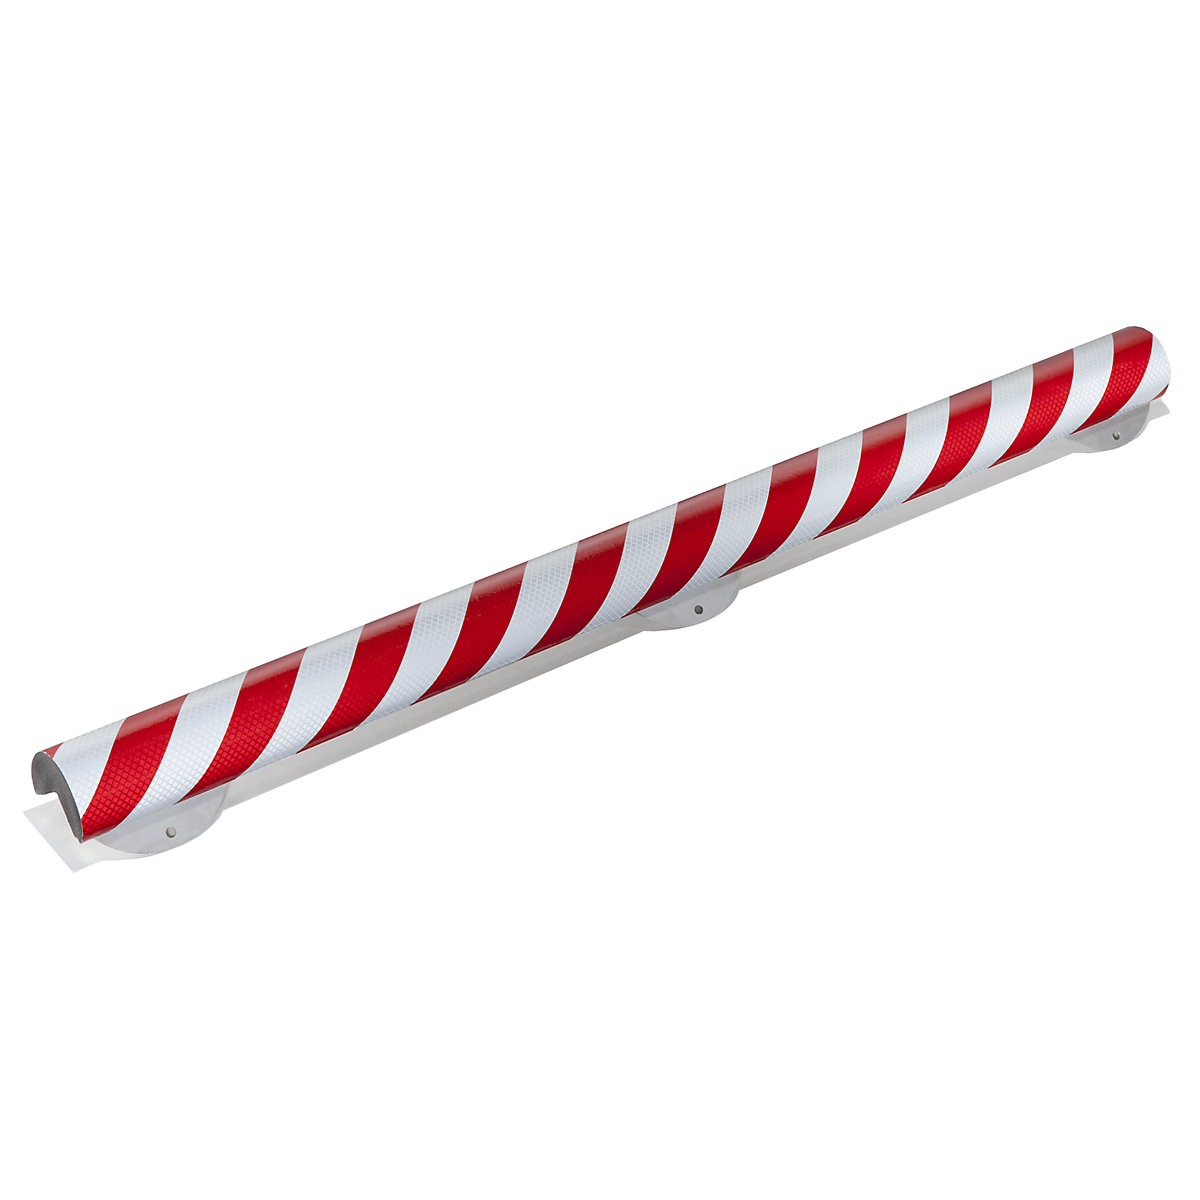 SHG – Protecție pentru colț Knuffi® cu șină de montaj, tip A+, bucată de 1 m, roșu / alb reflectorizant